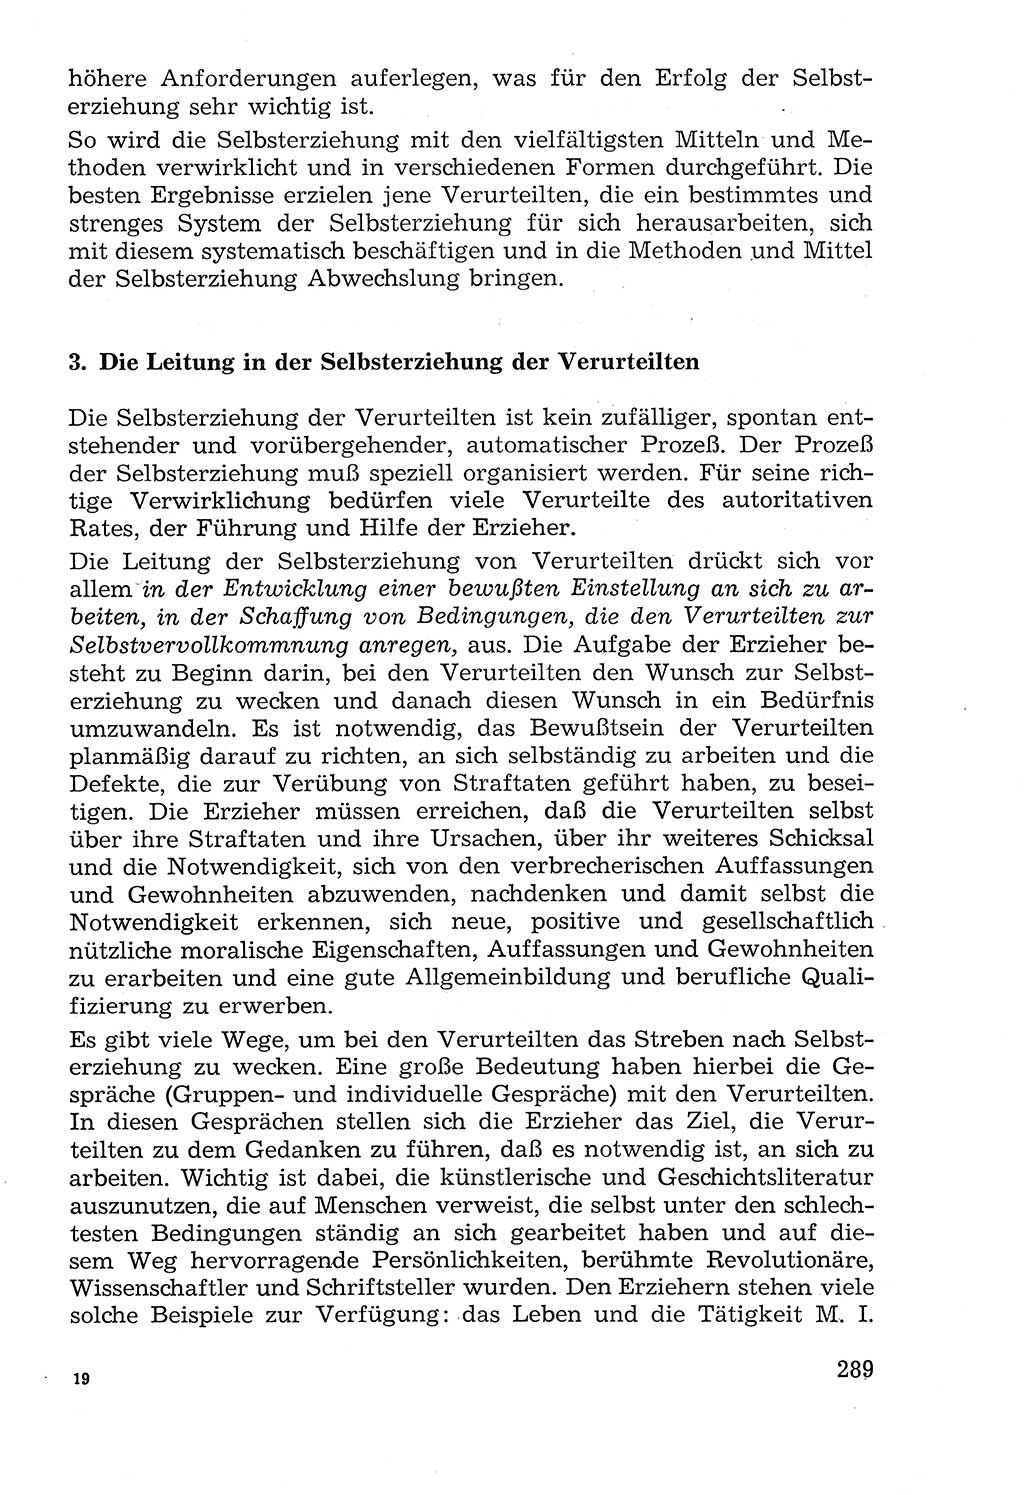 Lehrbuch der Strafvollzugspädagogik [Deutsche Demokratische Republik (DDR)] 1969, Seite 289 (Lb. SV-Pd. DDR 1969, S. 289)